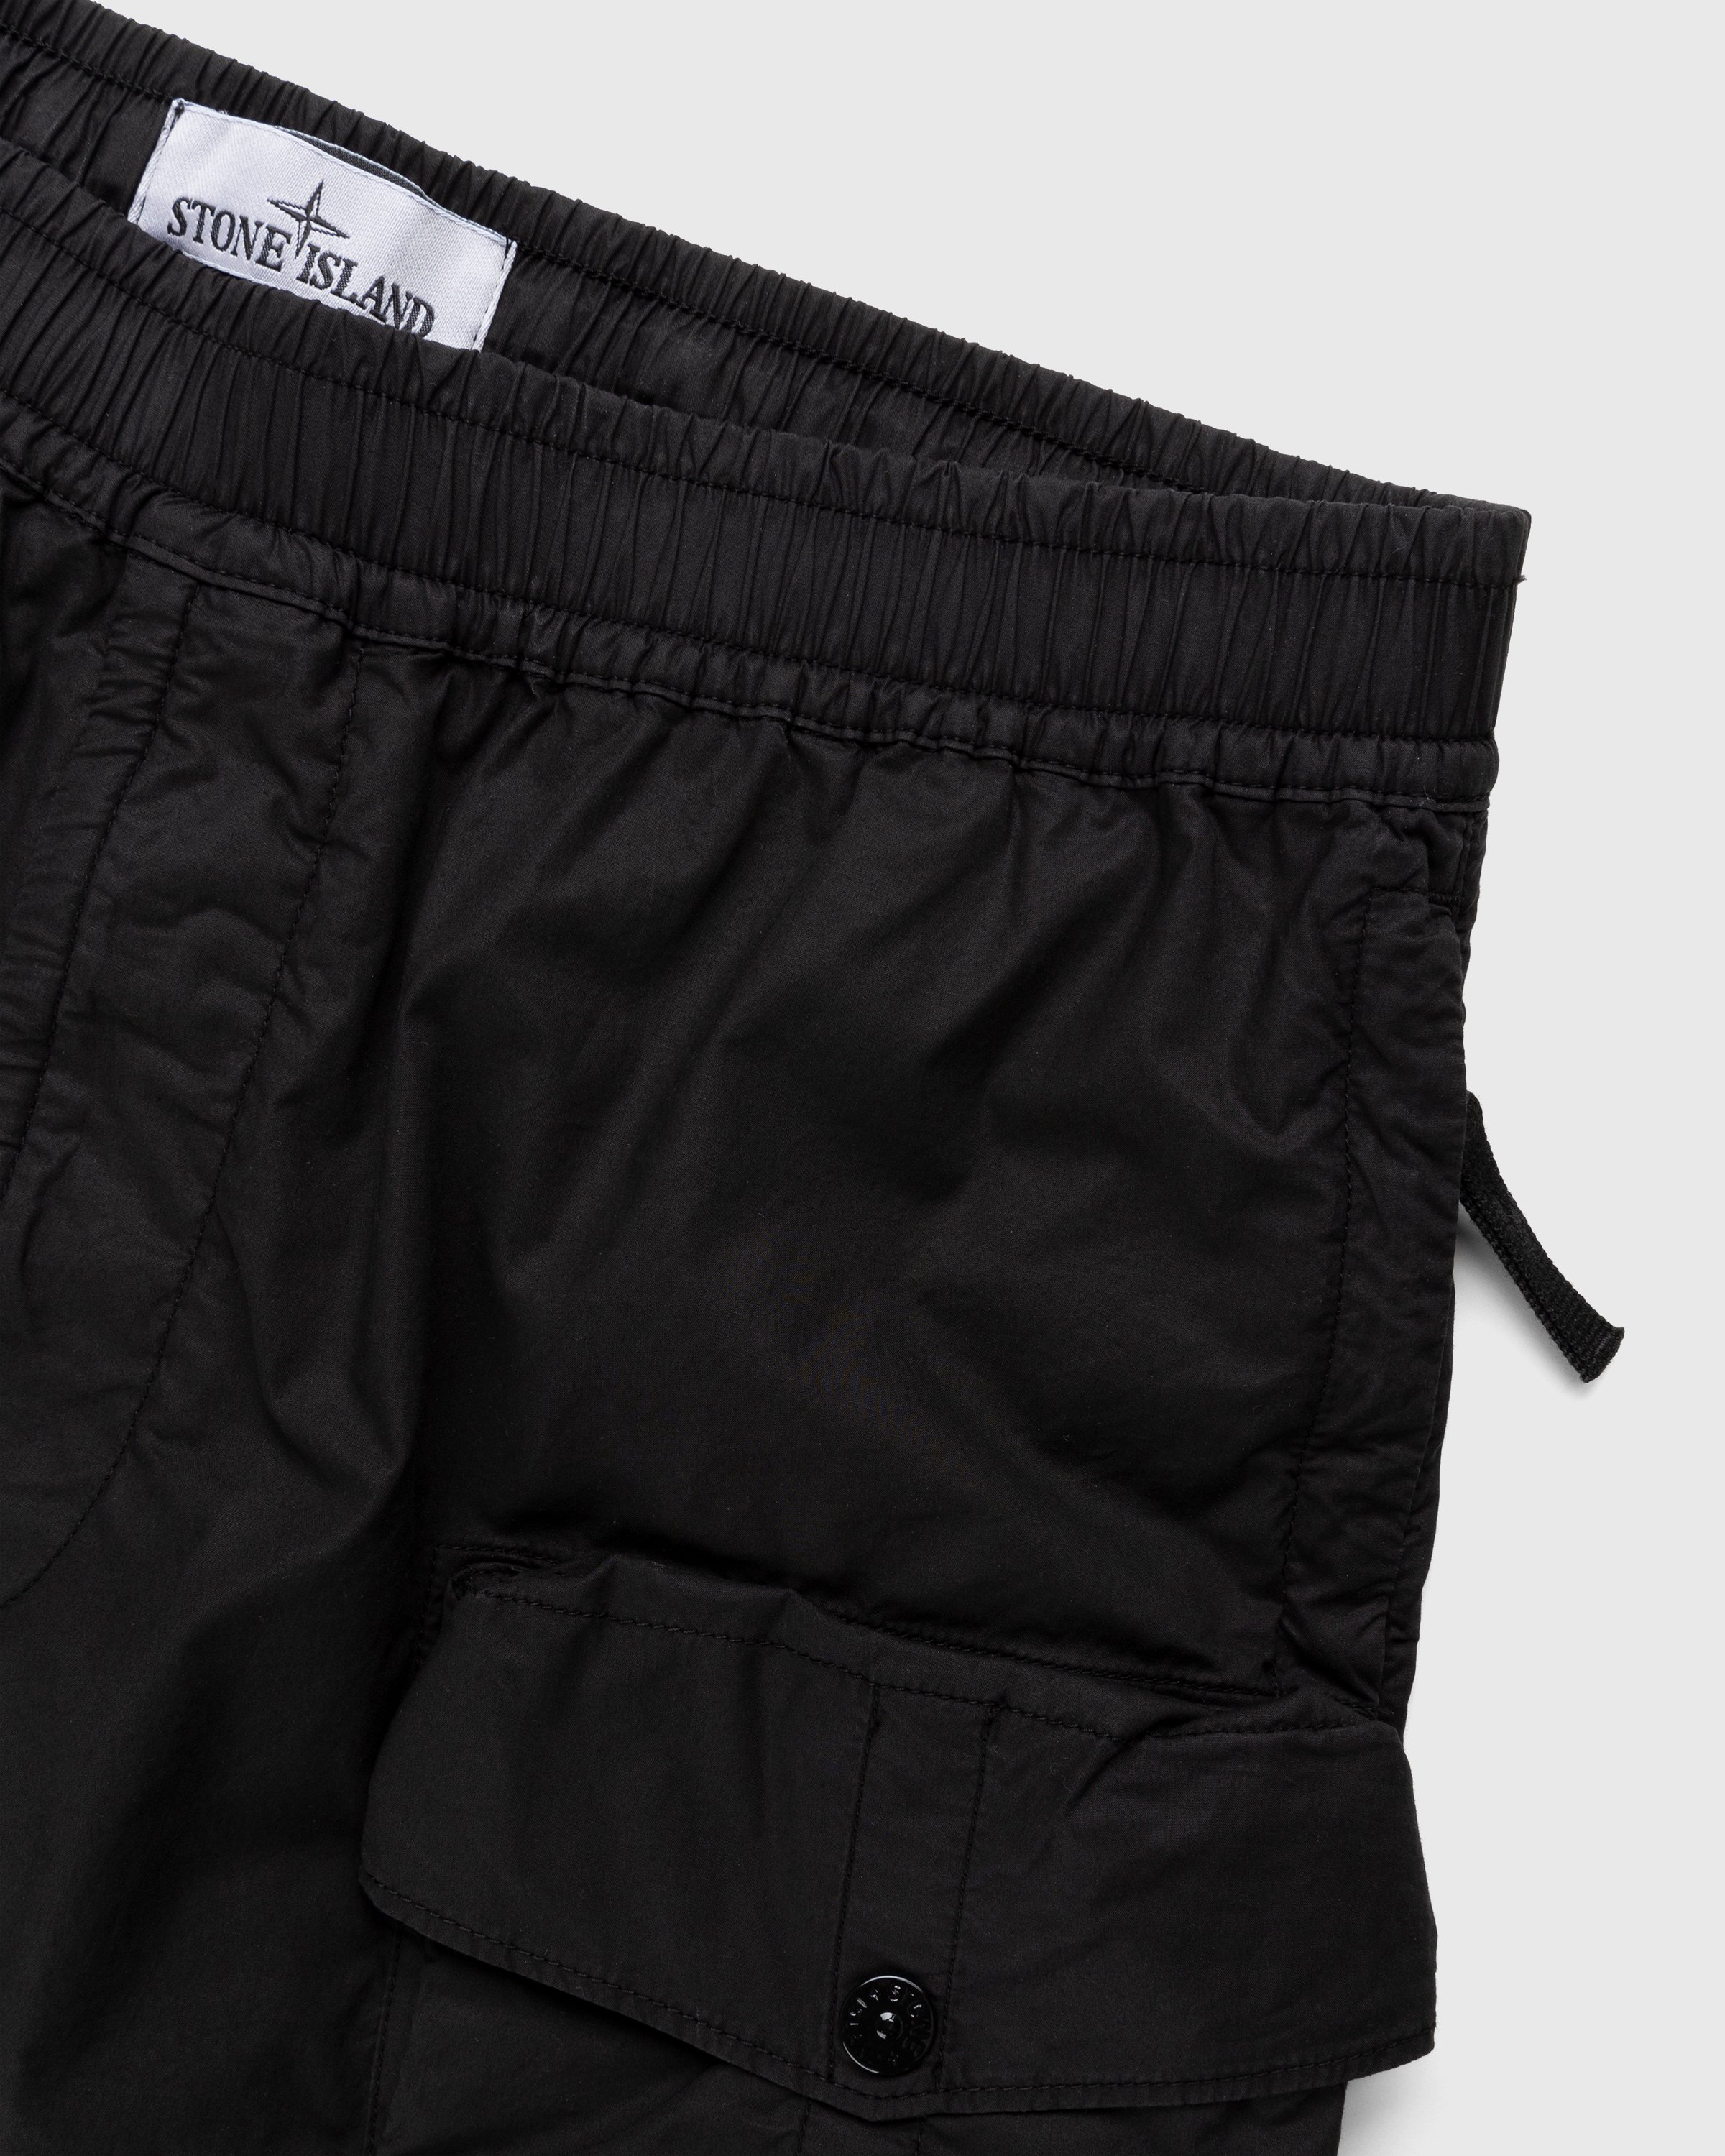 Stone Island - L0103 Garment-Dyed Shorts Black - Clothing - Black - Image 3